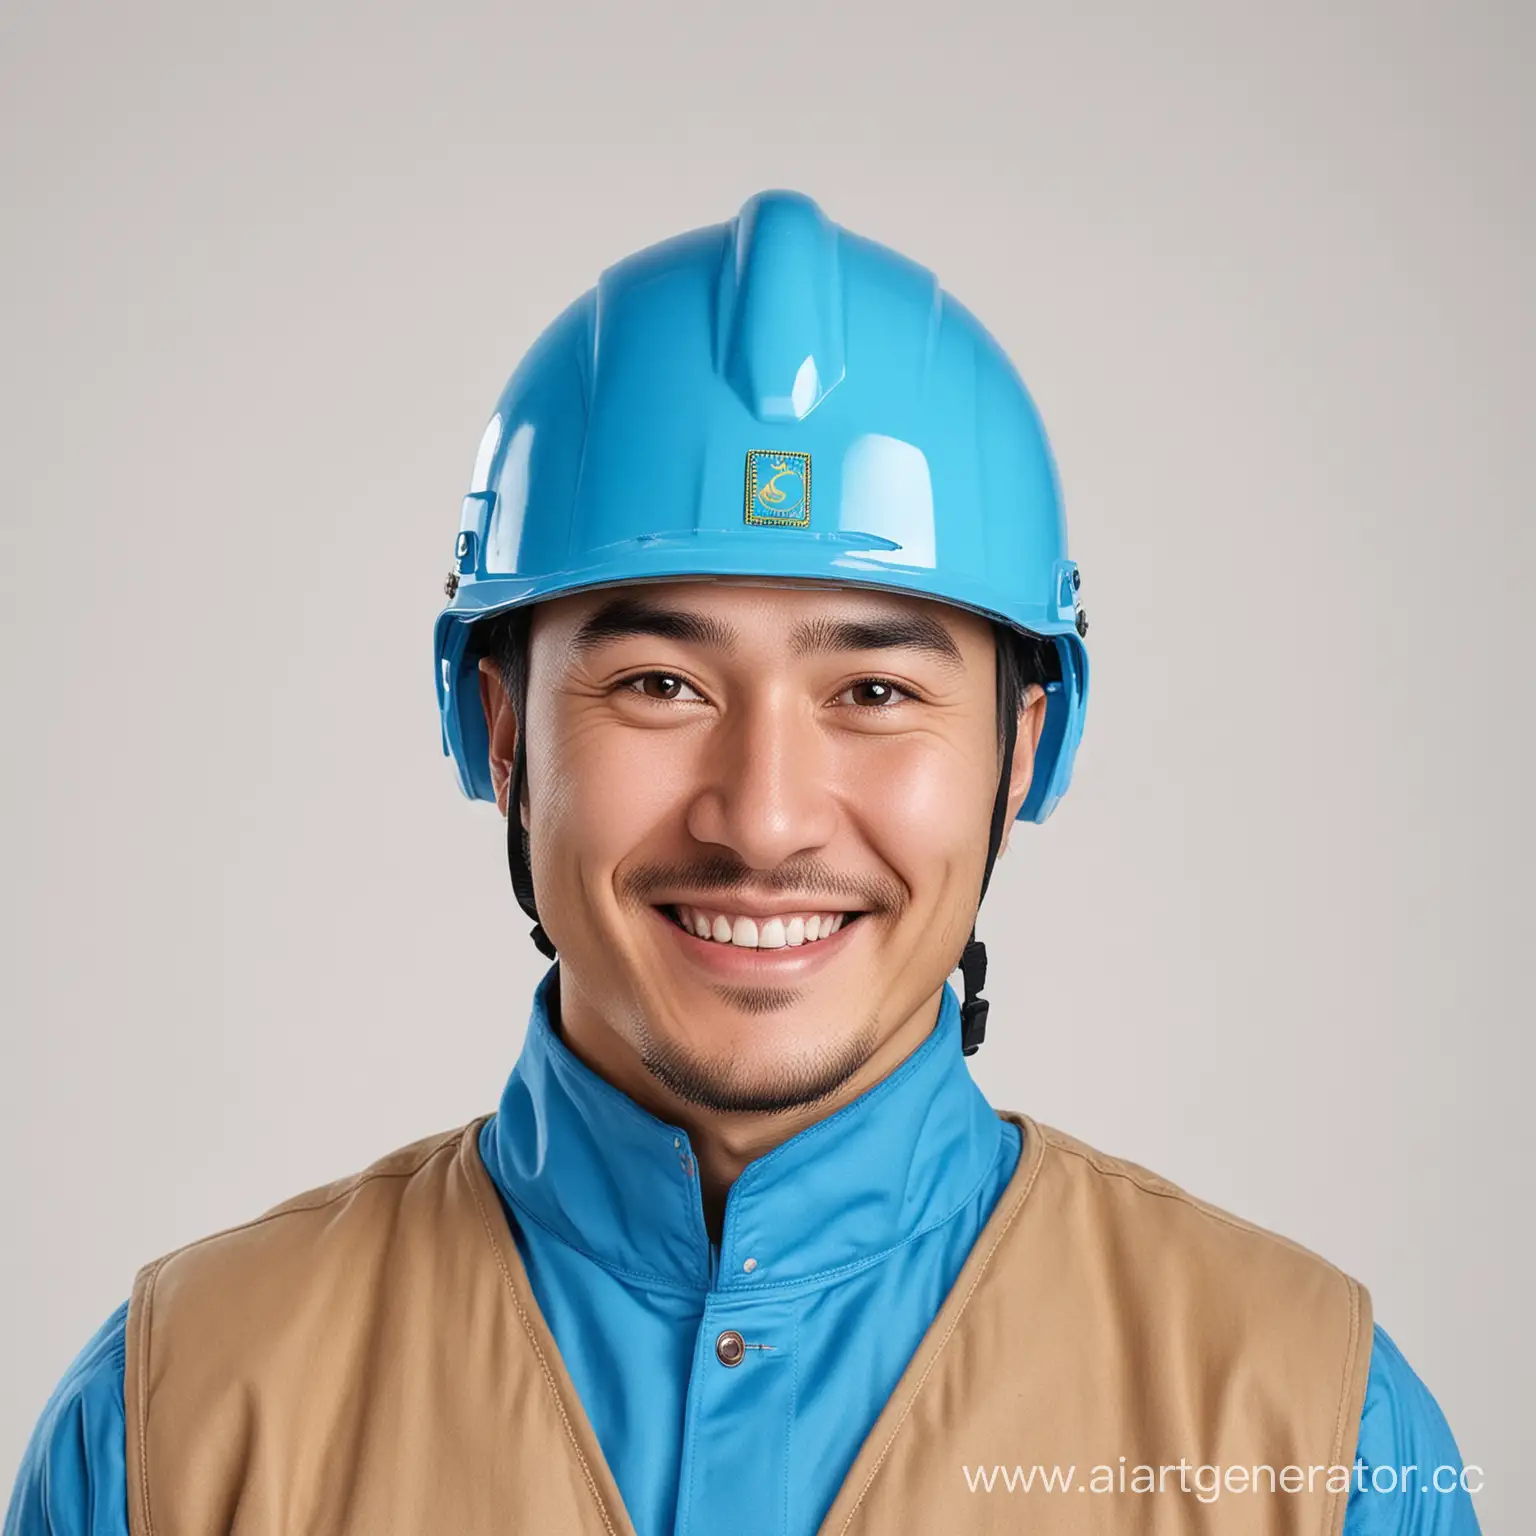 Smiling-Kazakh-Worker-in-Blue-Helmet-Against-White-Background